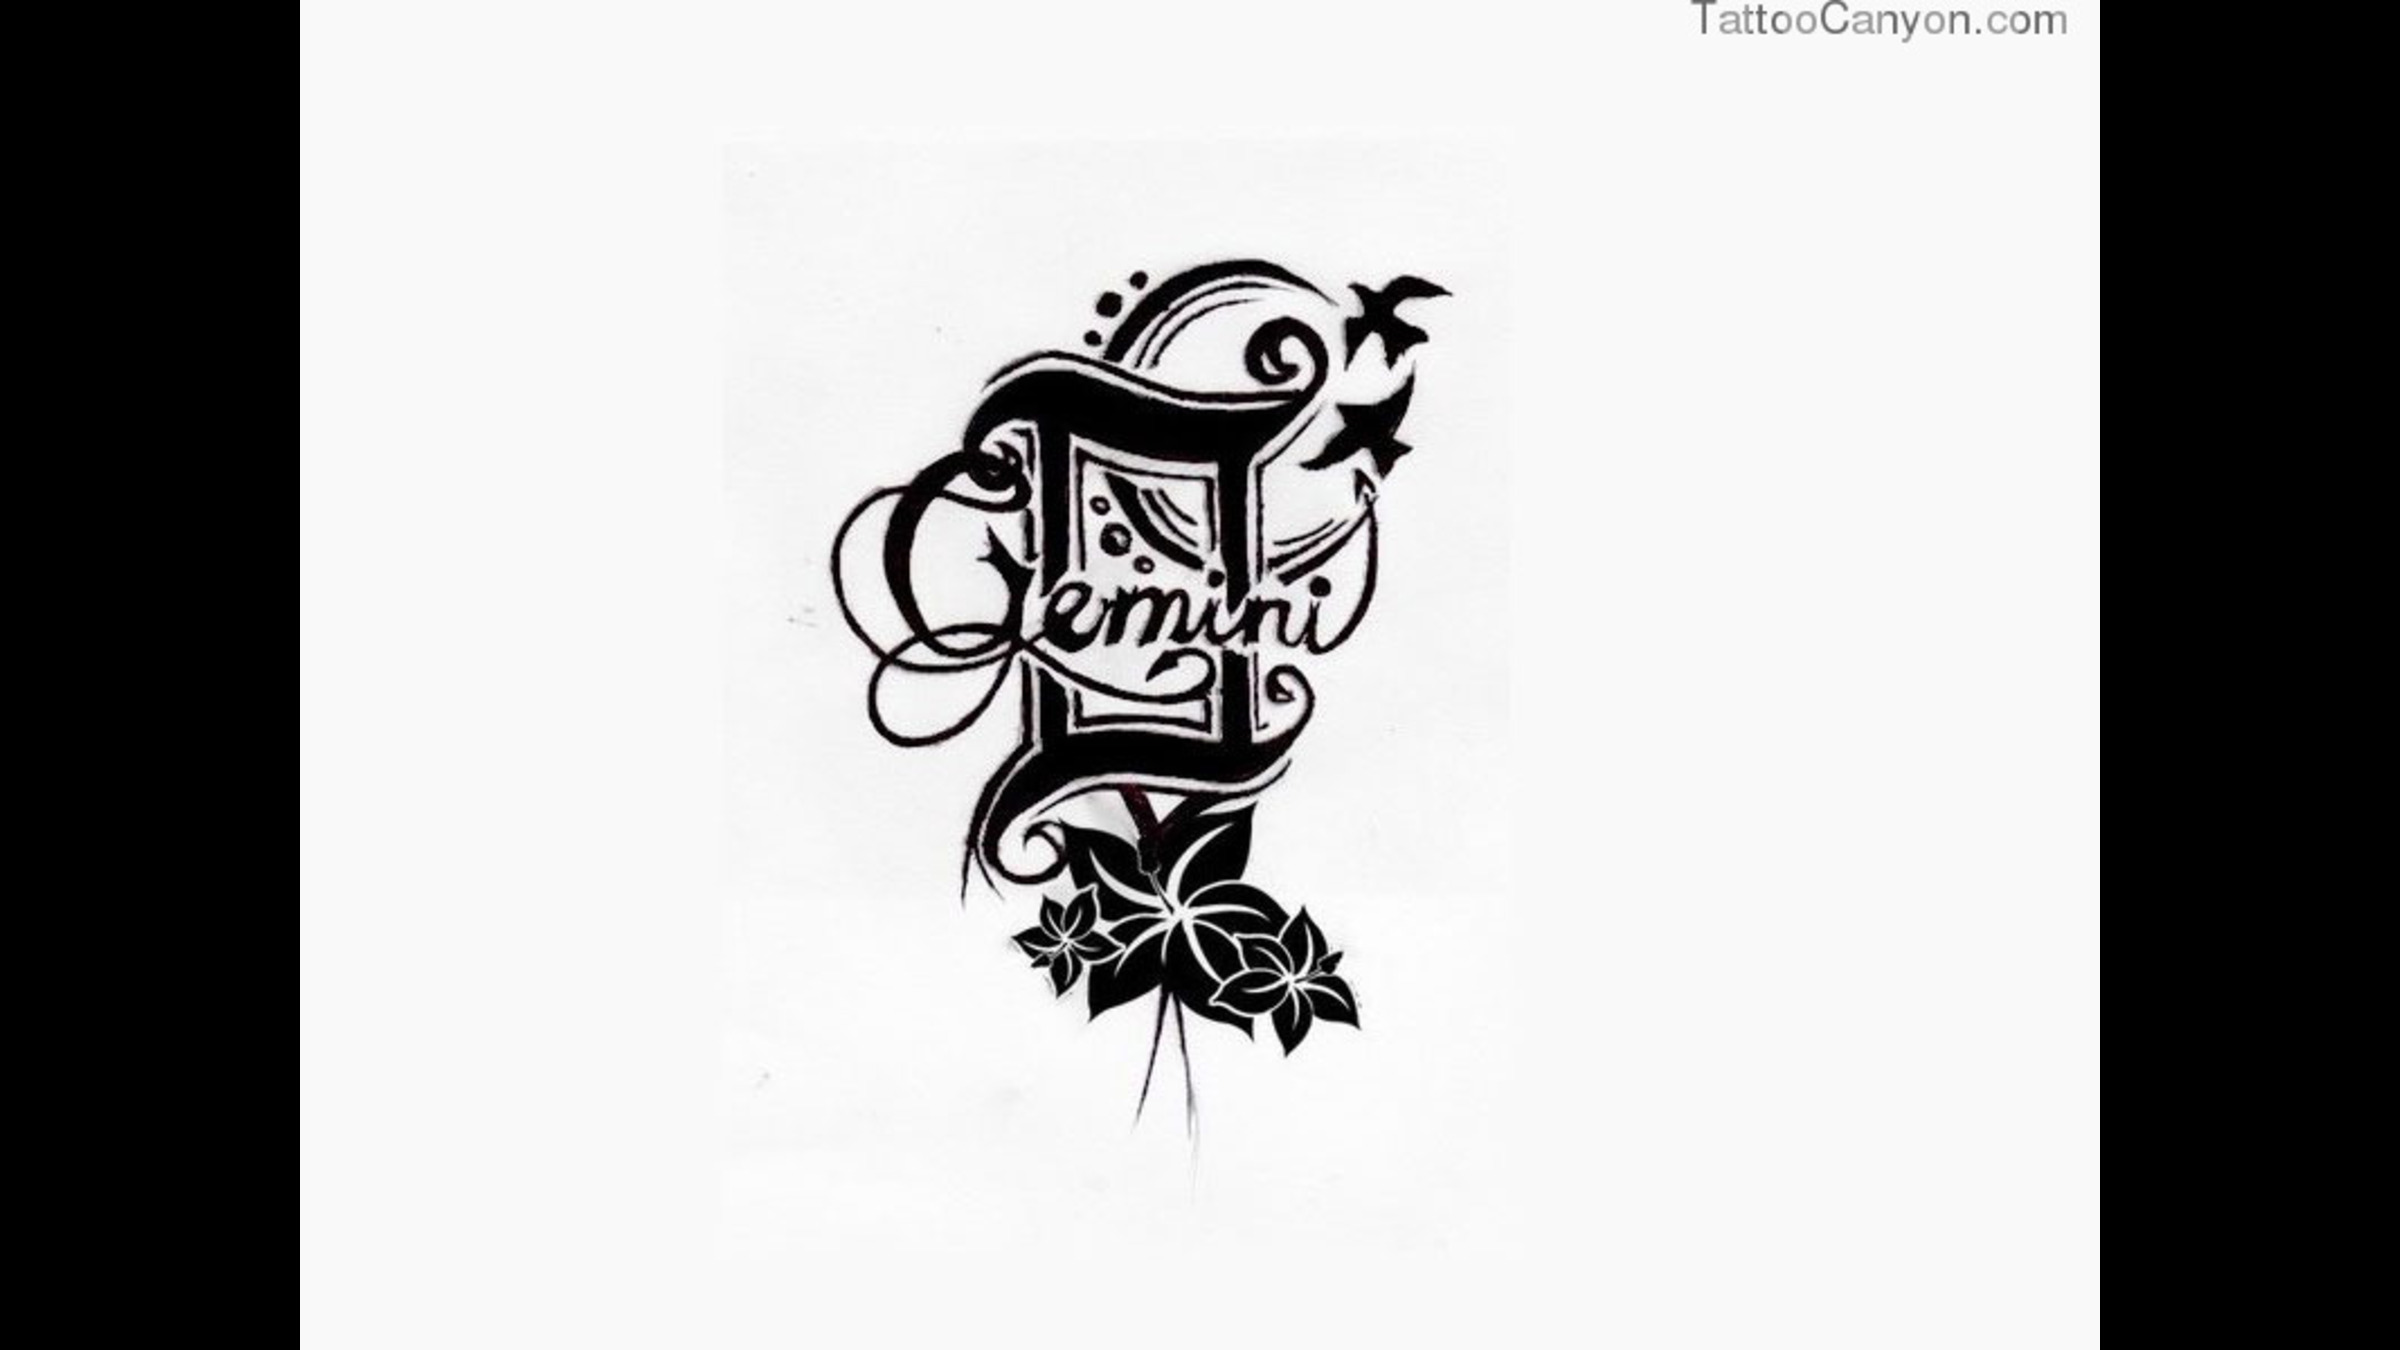 cute gemini sign tattoos